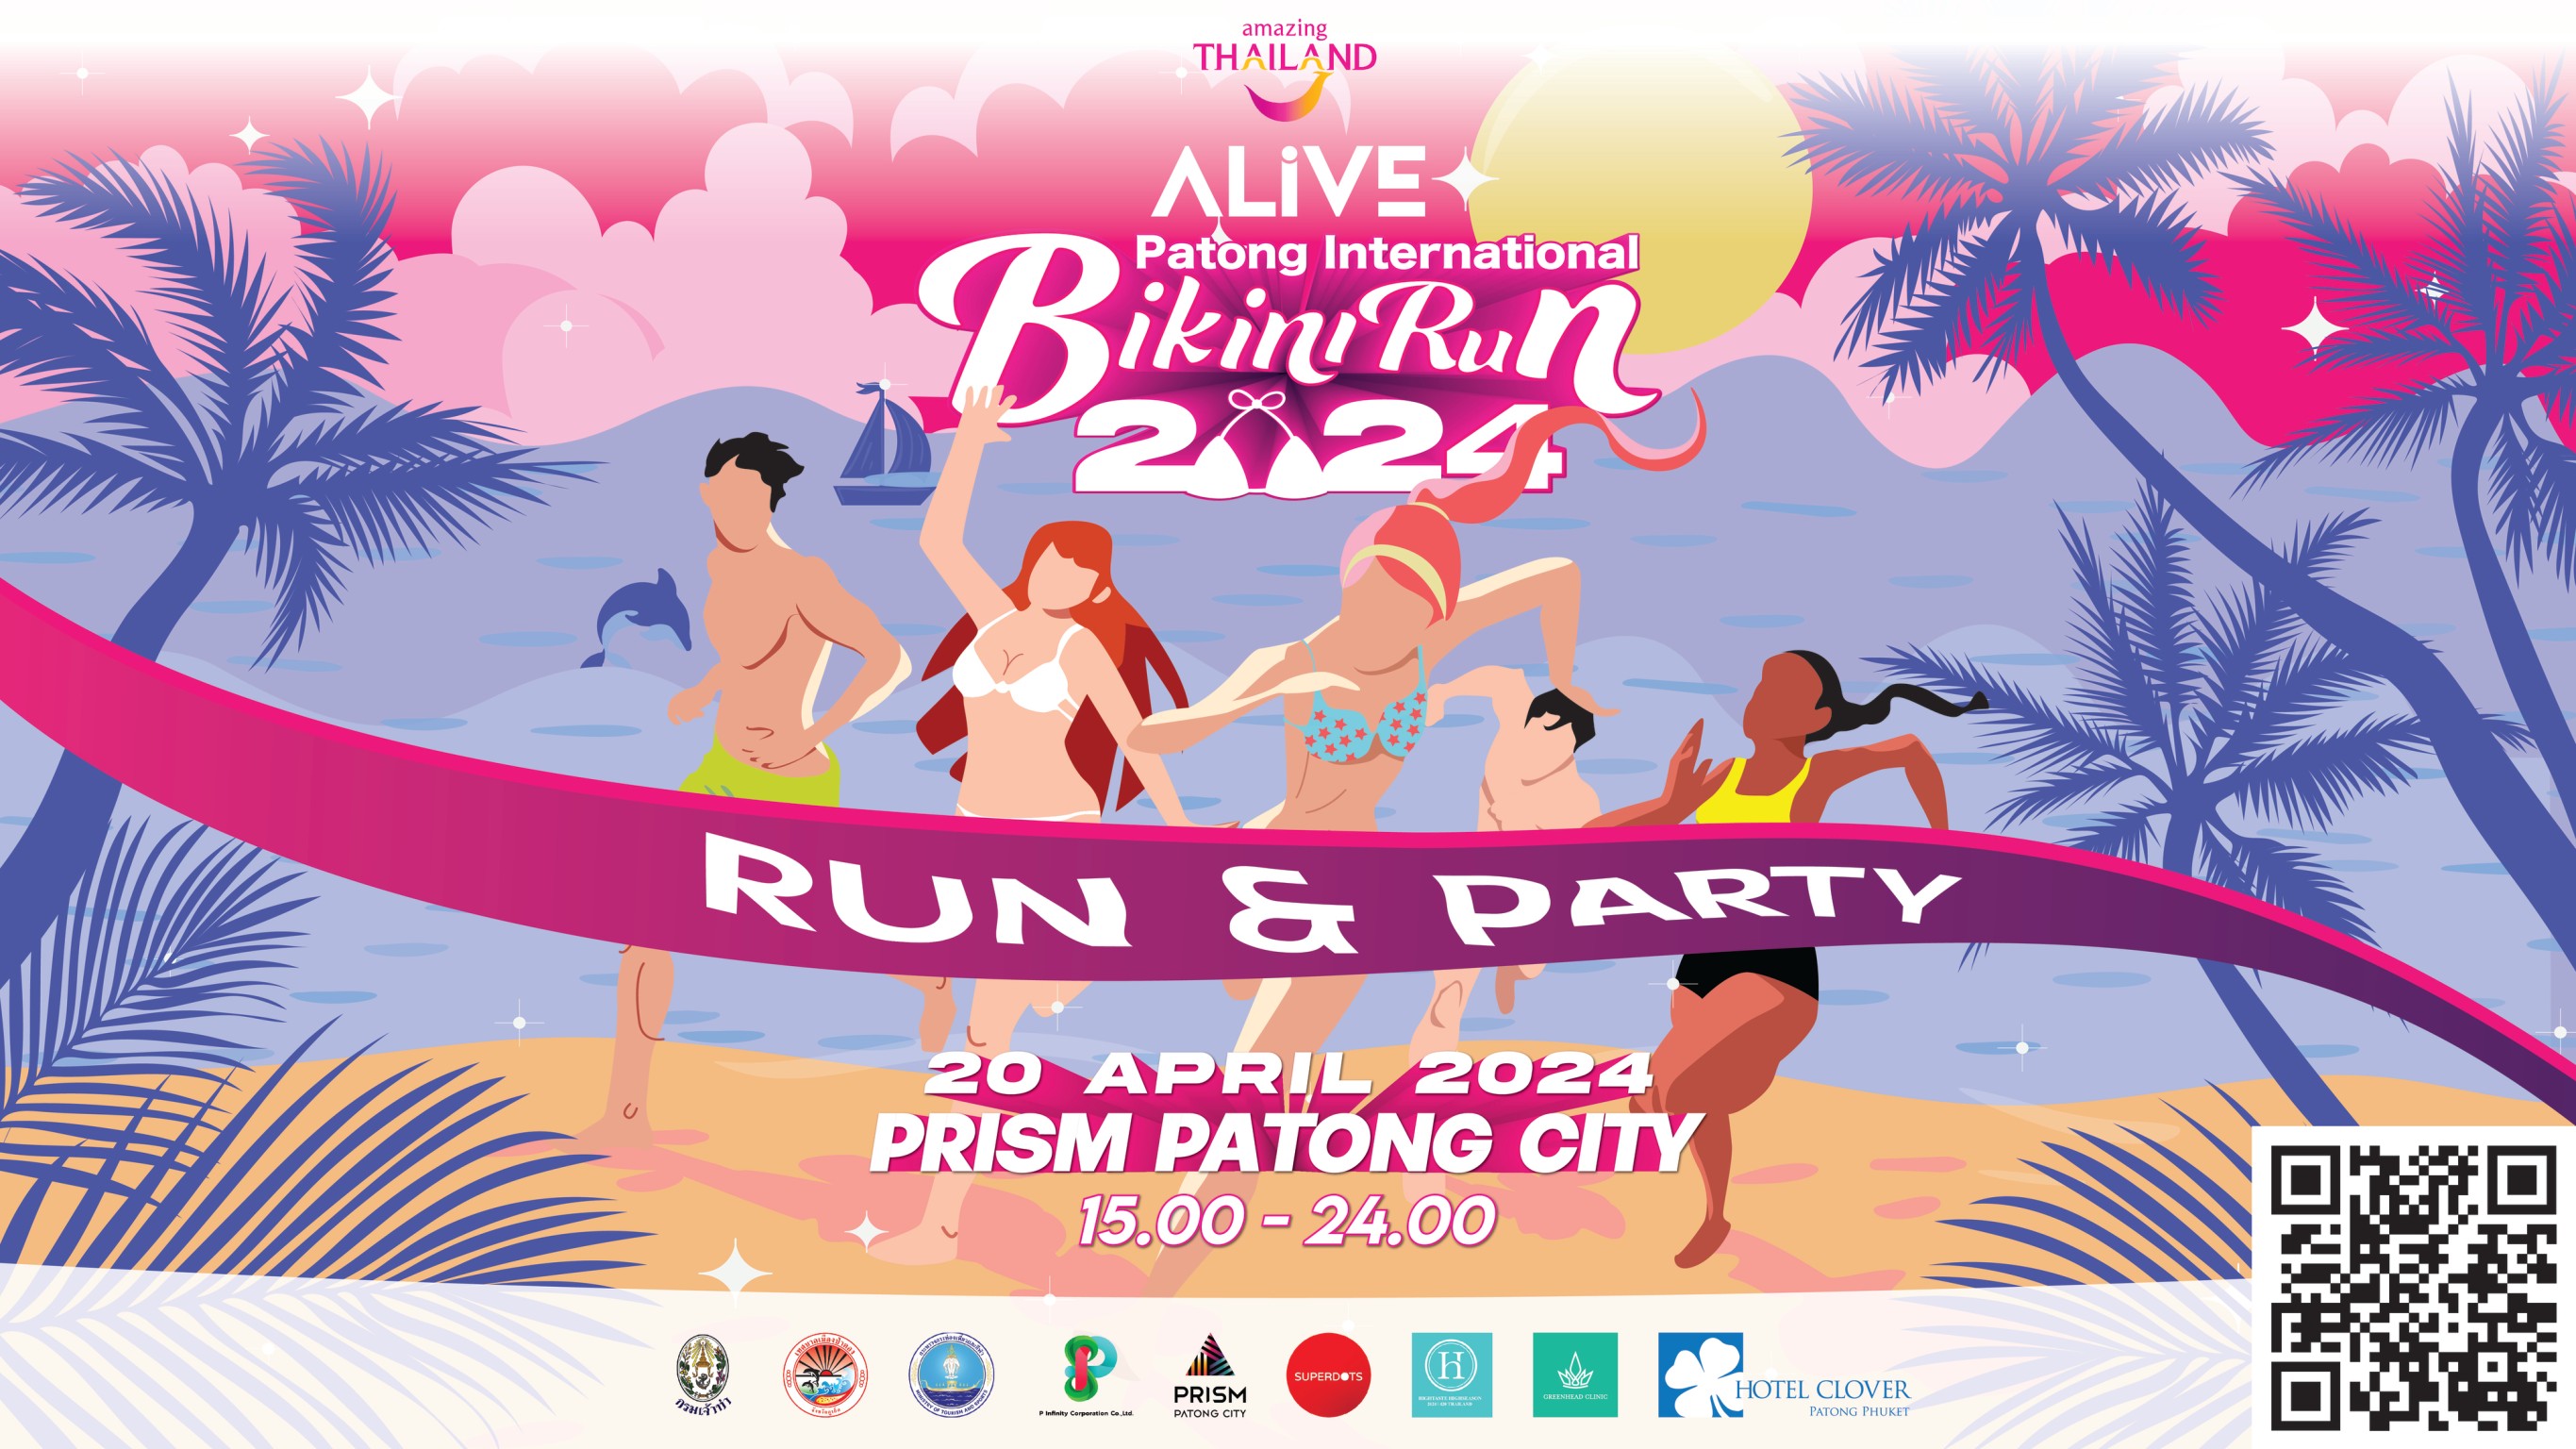 ALiVE Patong International Bikini Run 2024งานวิ่งบิกินี่สุดเซ็กซี่ครั้งแรกริมหาดป่าตอง จังหวัดภูเก็ต